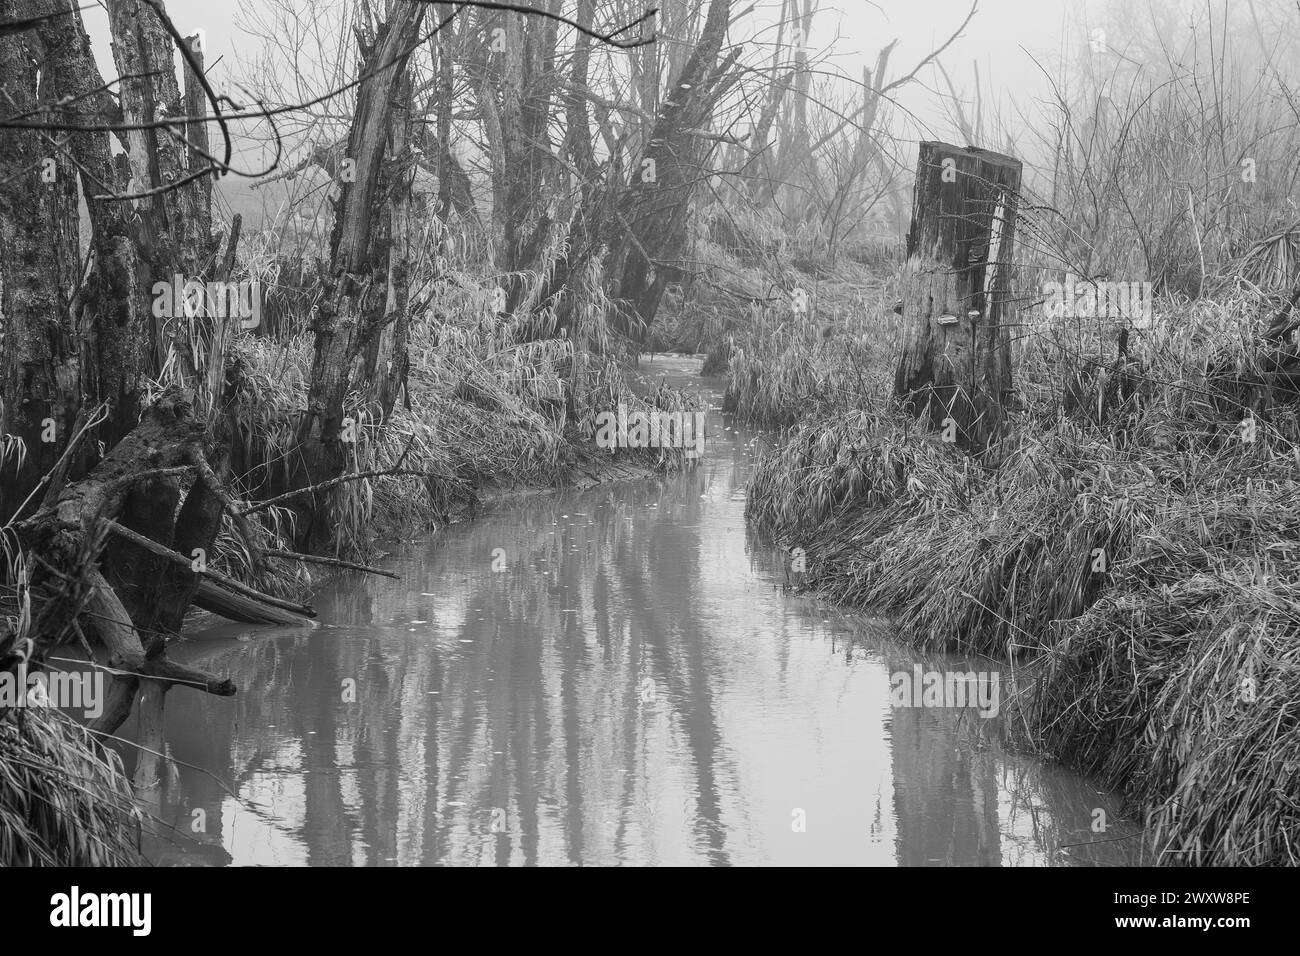 L'immagine in bianco e nero mostra un torrente con alberi morti e nebbia, una scena cupa piena di solitudine e decadimento. Foto Stock